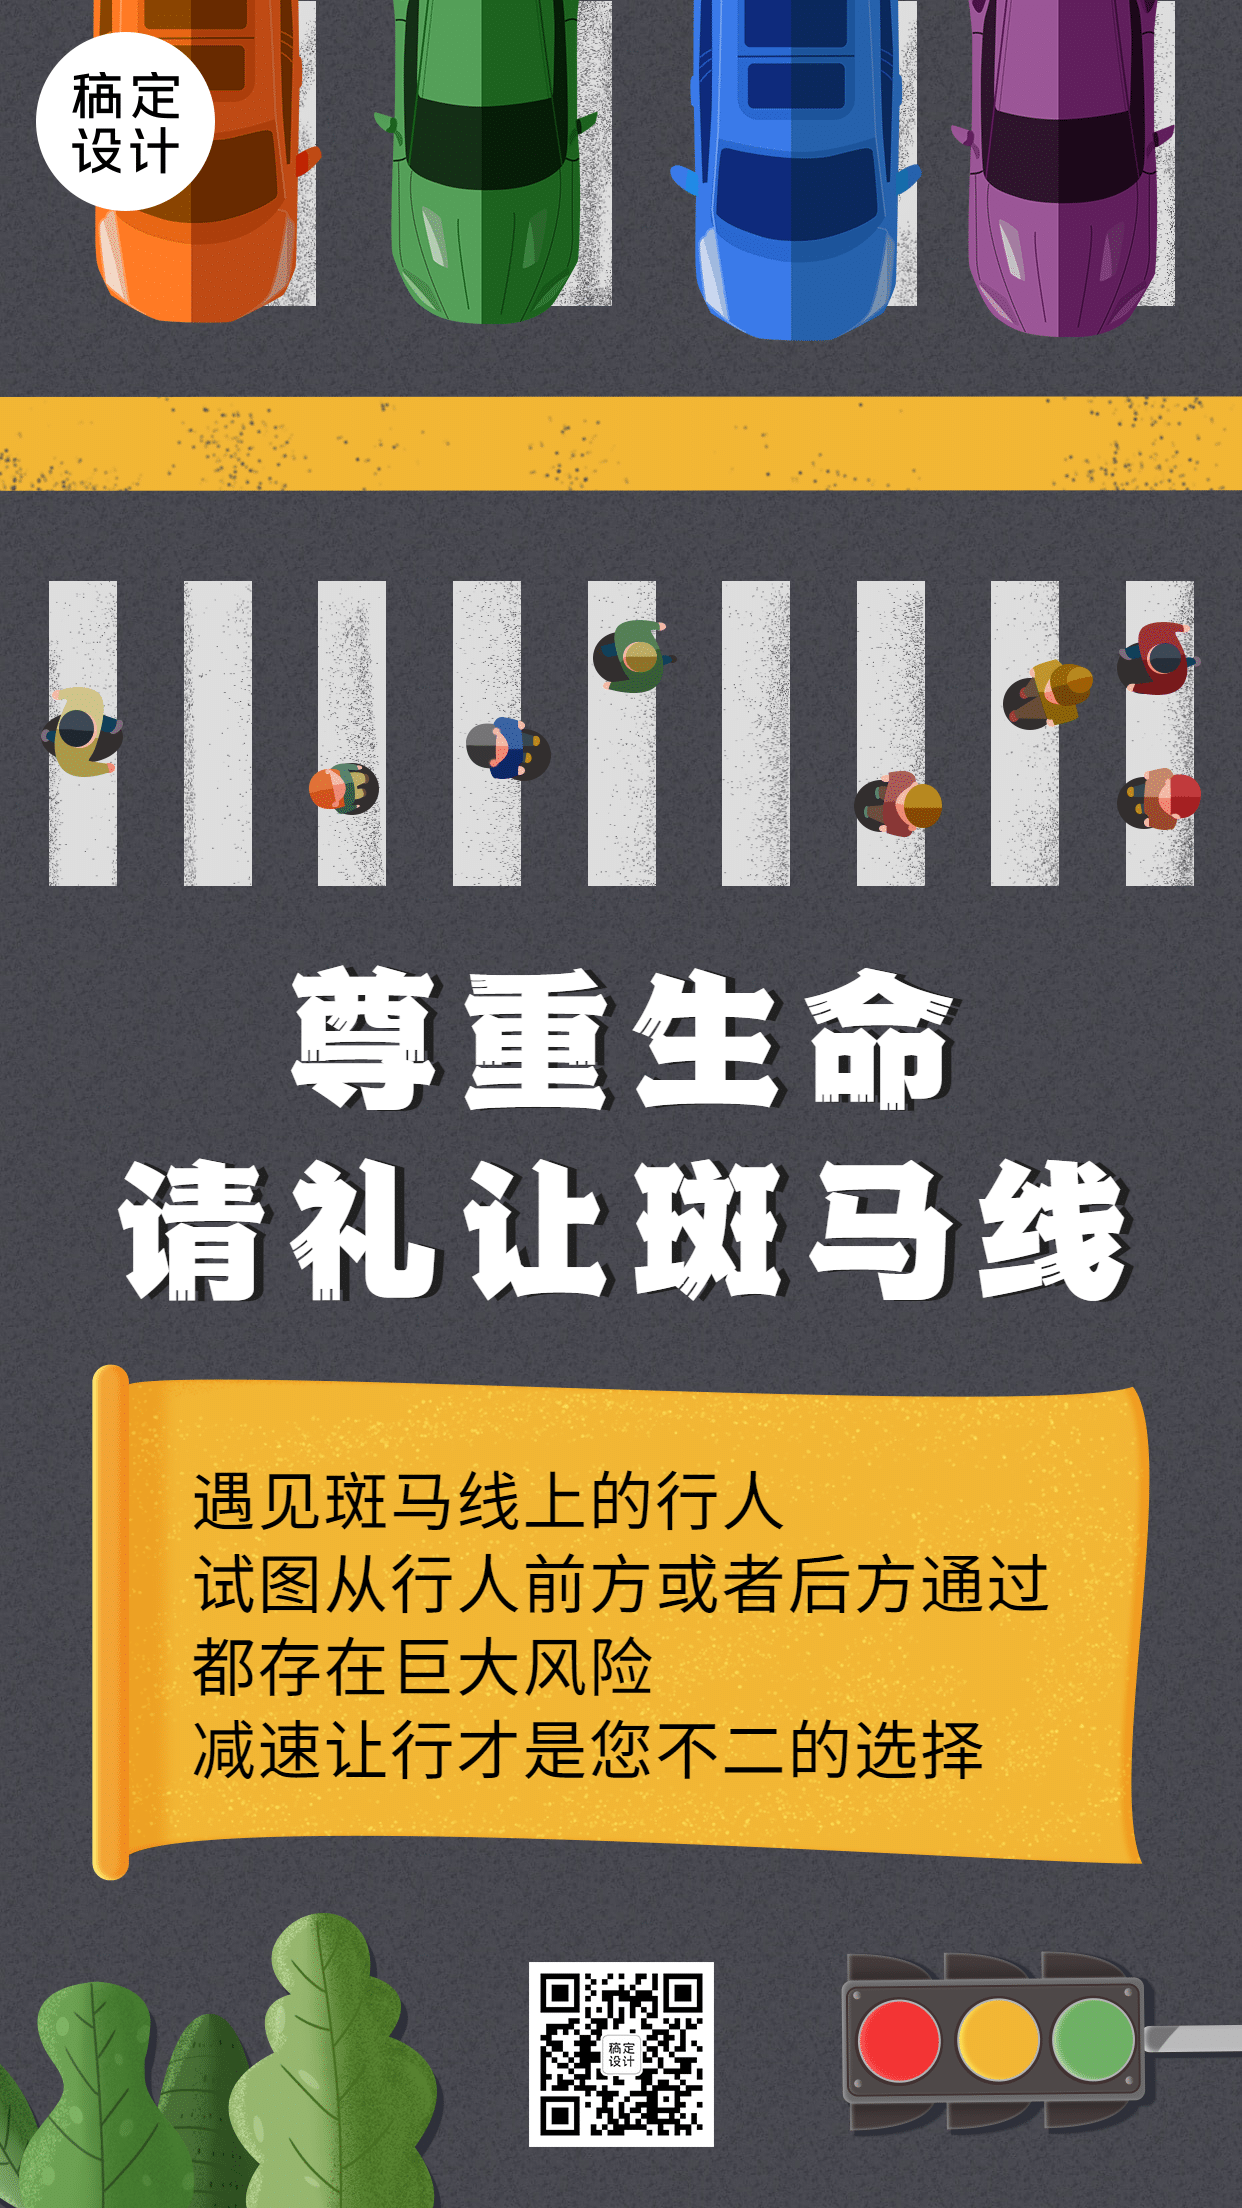 公安交通安全礼让斑马线公益宣传手机海报预览效果